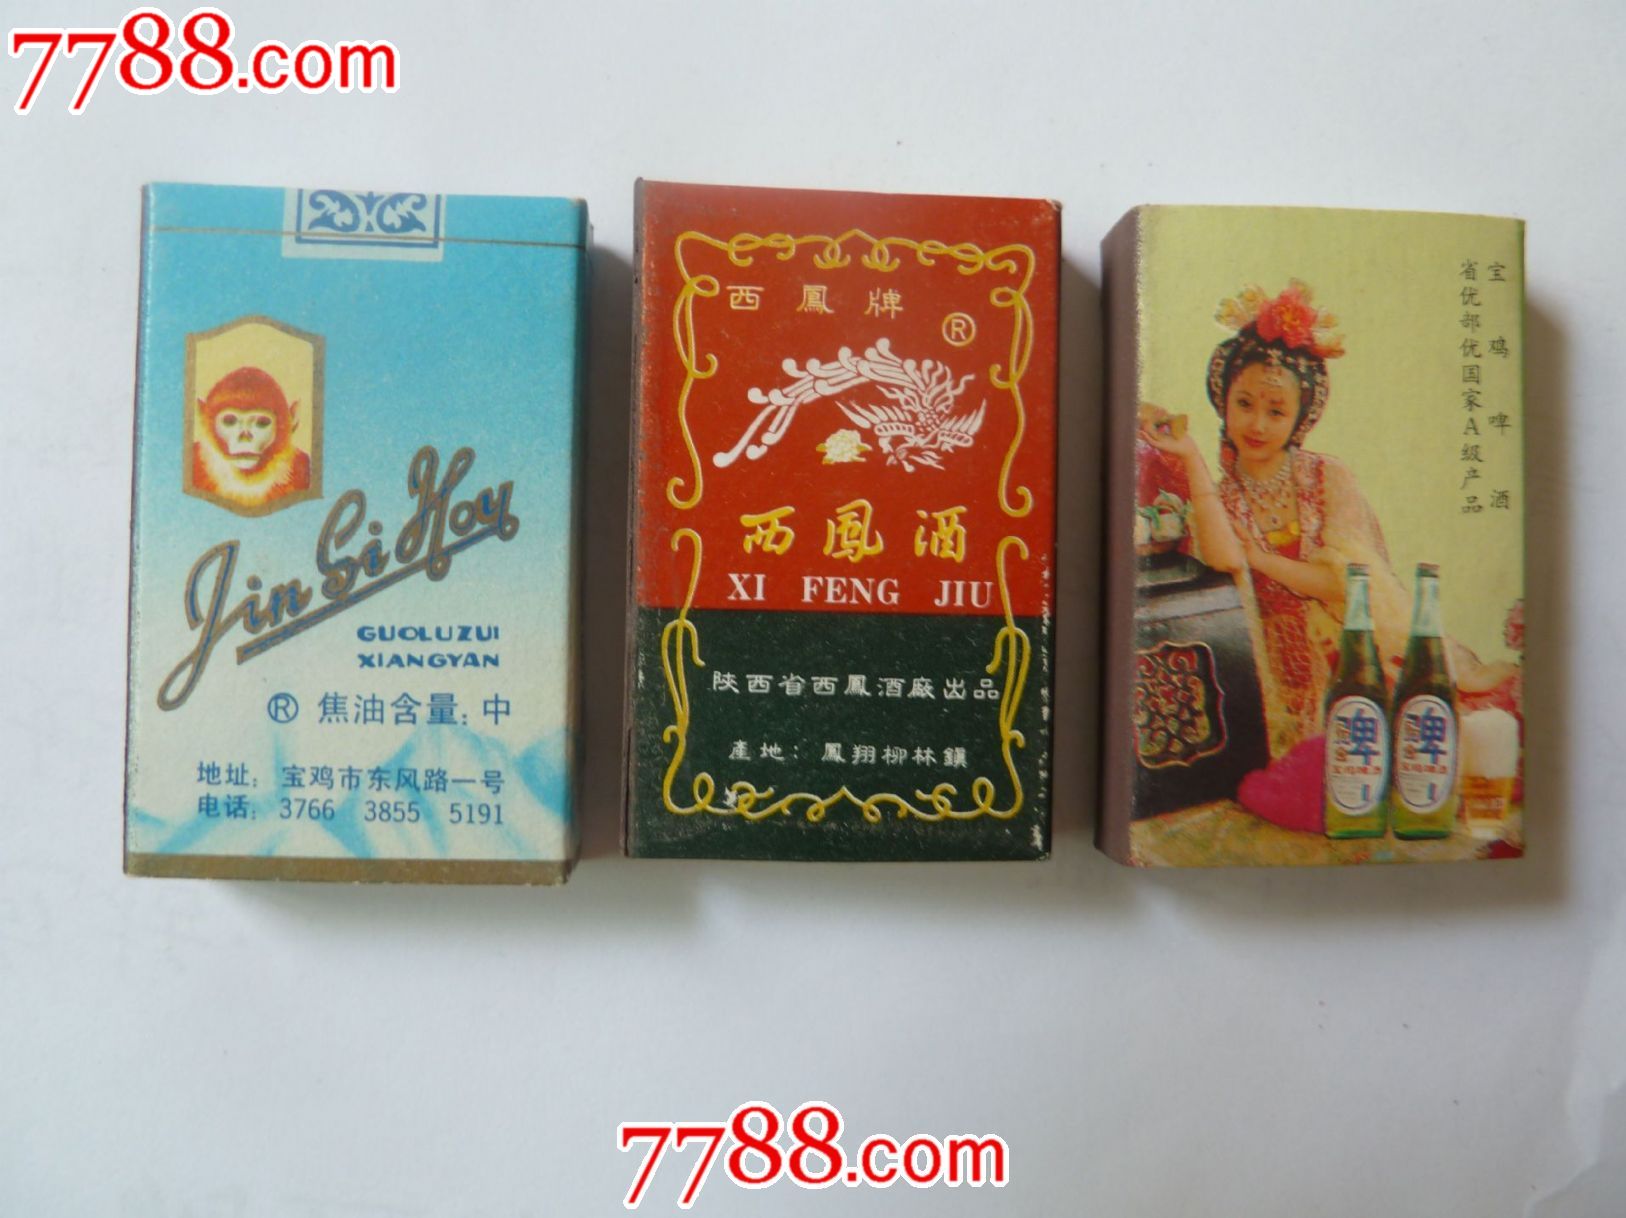 90年代初期西安火柴厂香烟,酒类广告火柴盒3件图片